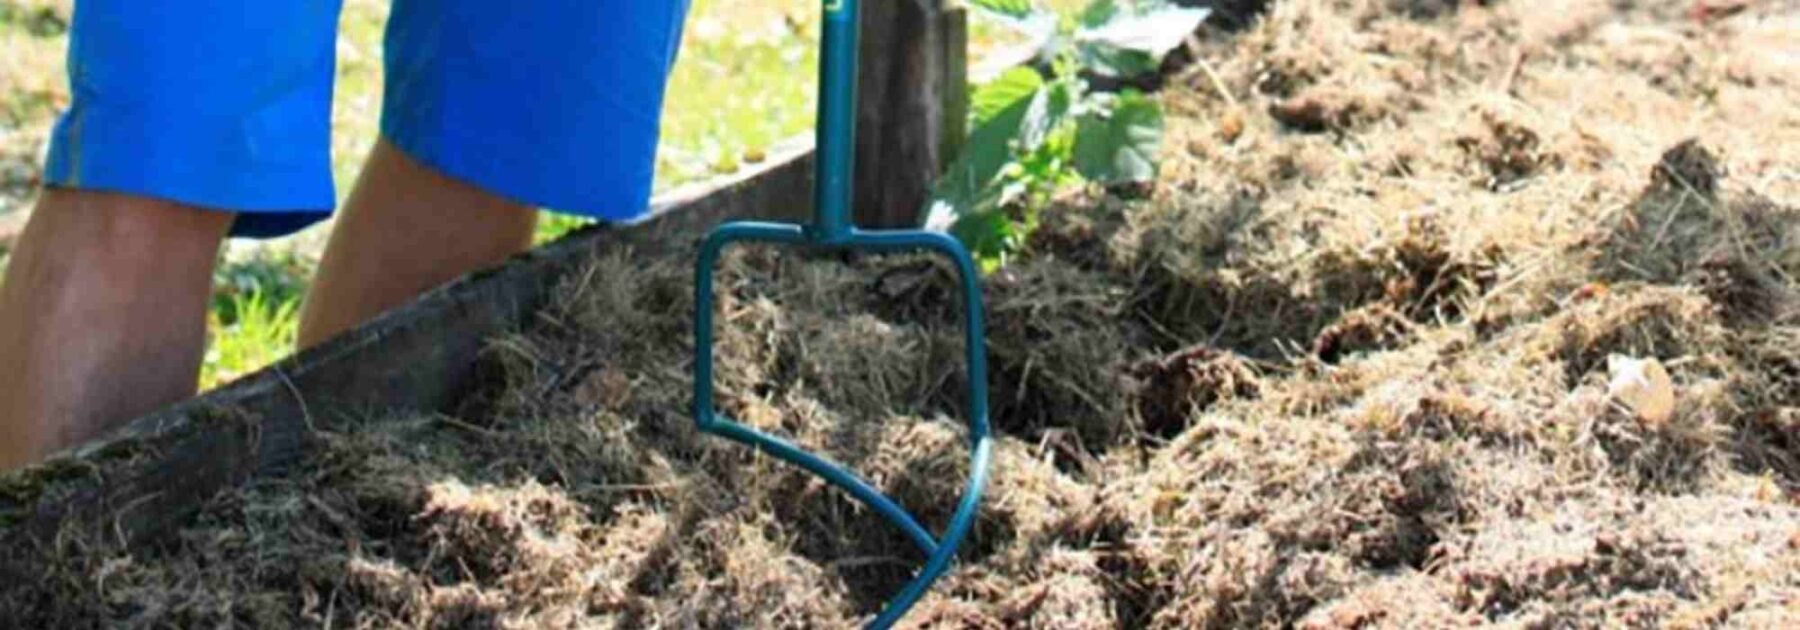 Compost : quand et comment l'utiliser au jardin ?